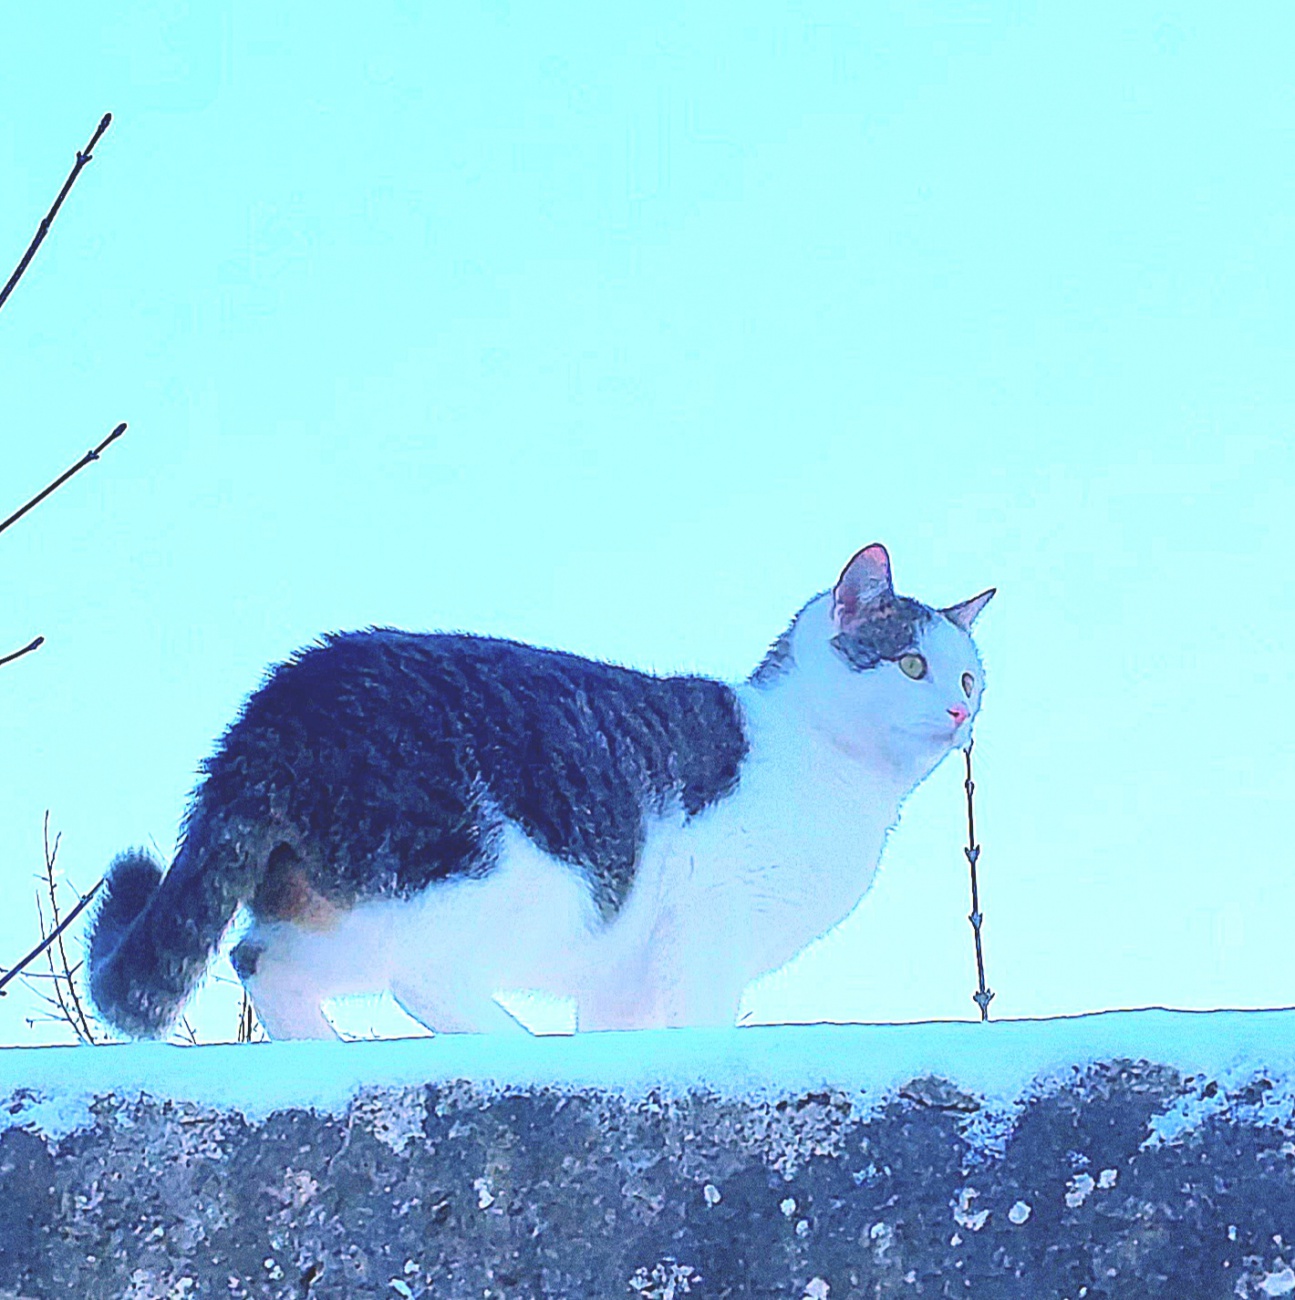 Foto: Martin Zehrer - Katze auf kemnather Stadtmauer.<br />
Kennengelernt beim Spaziergang durch Kemnath.  